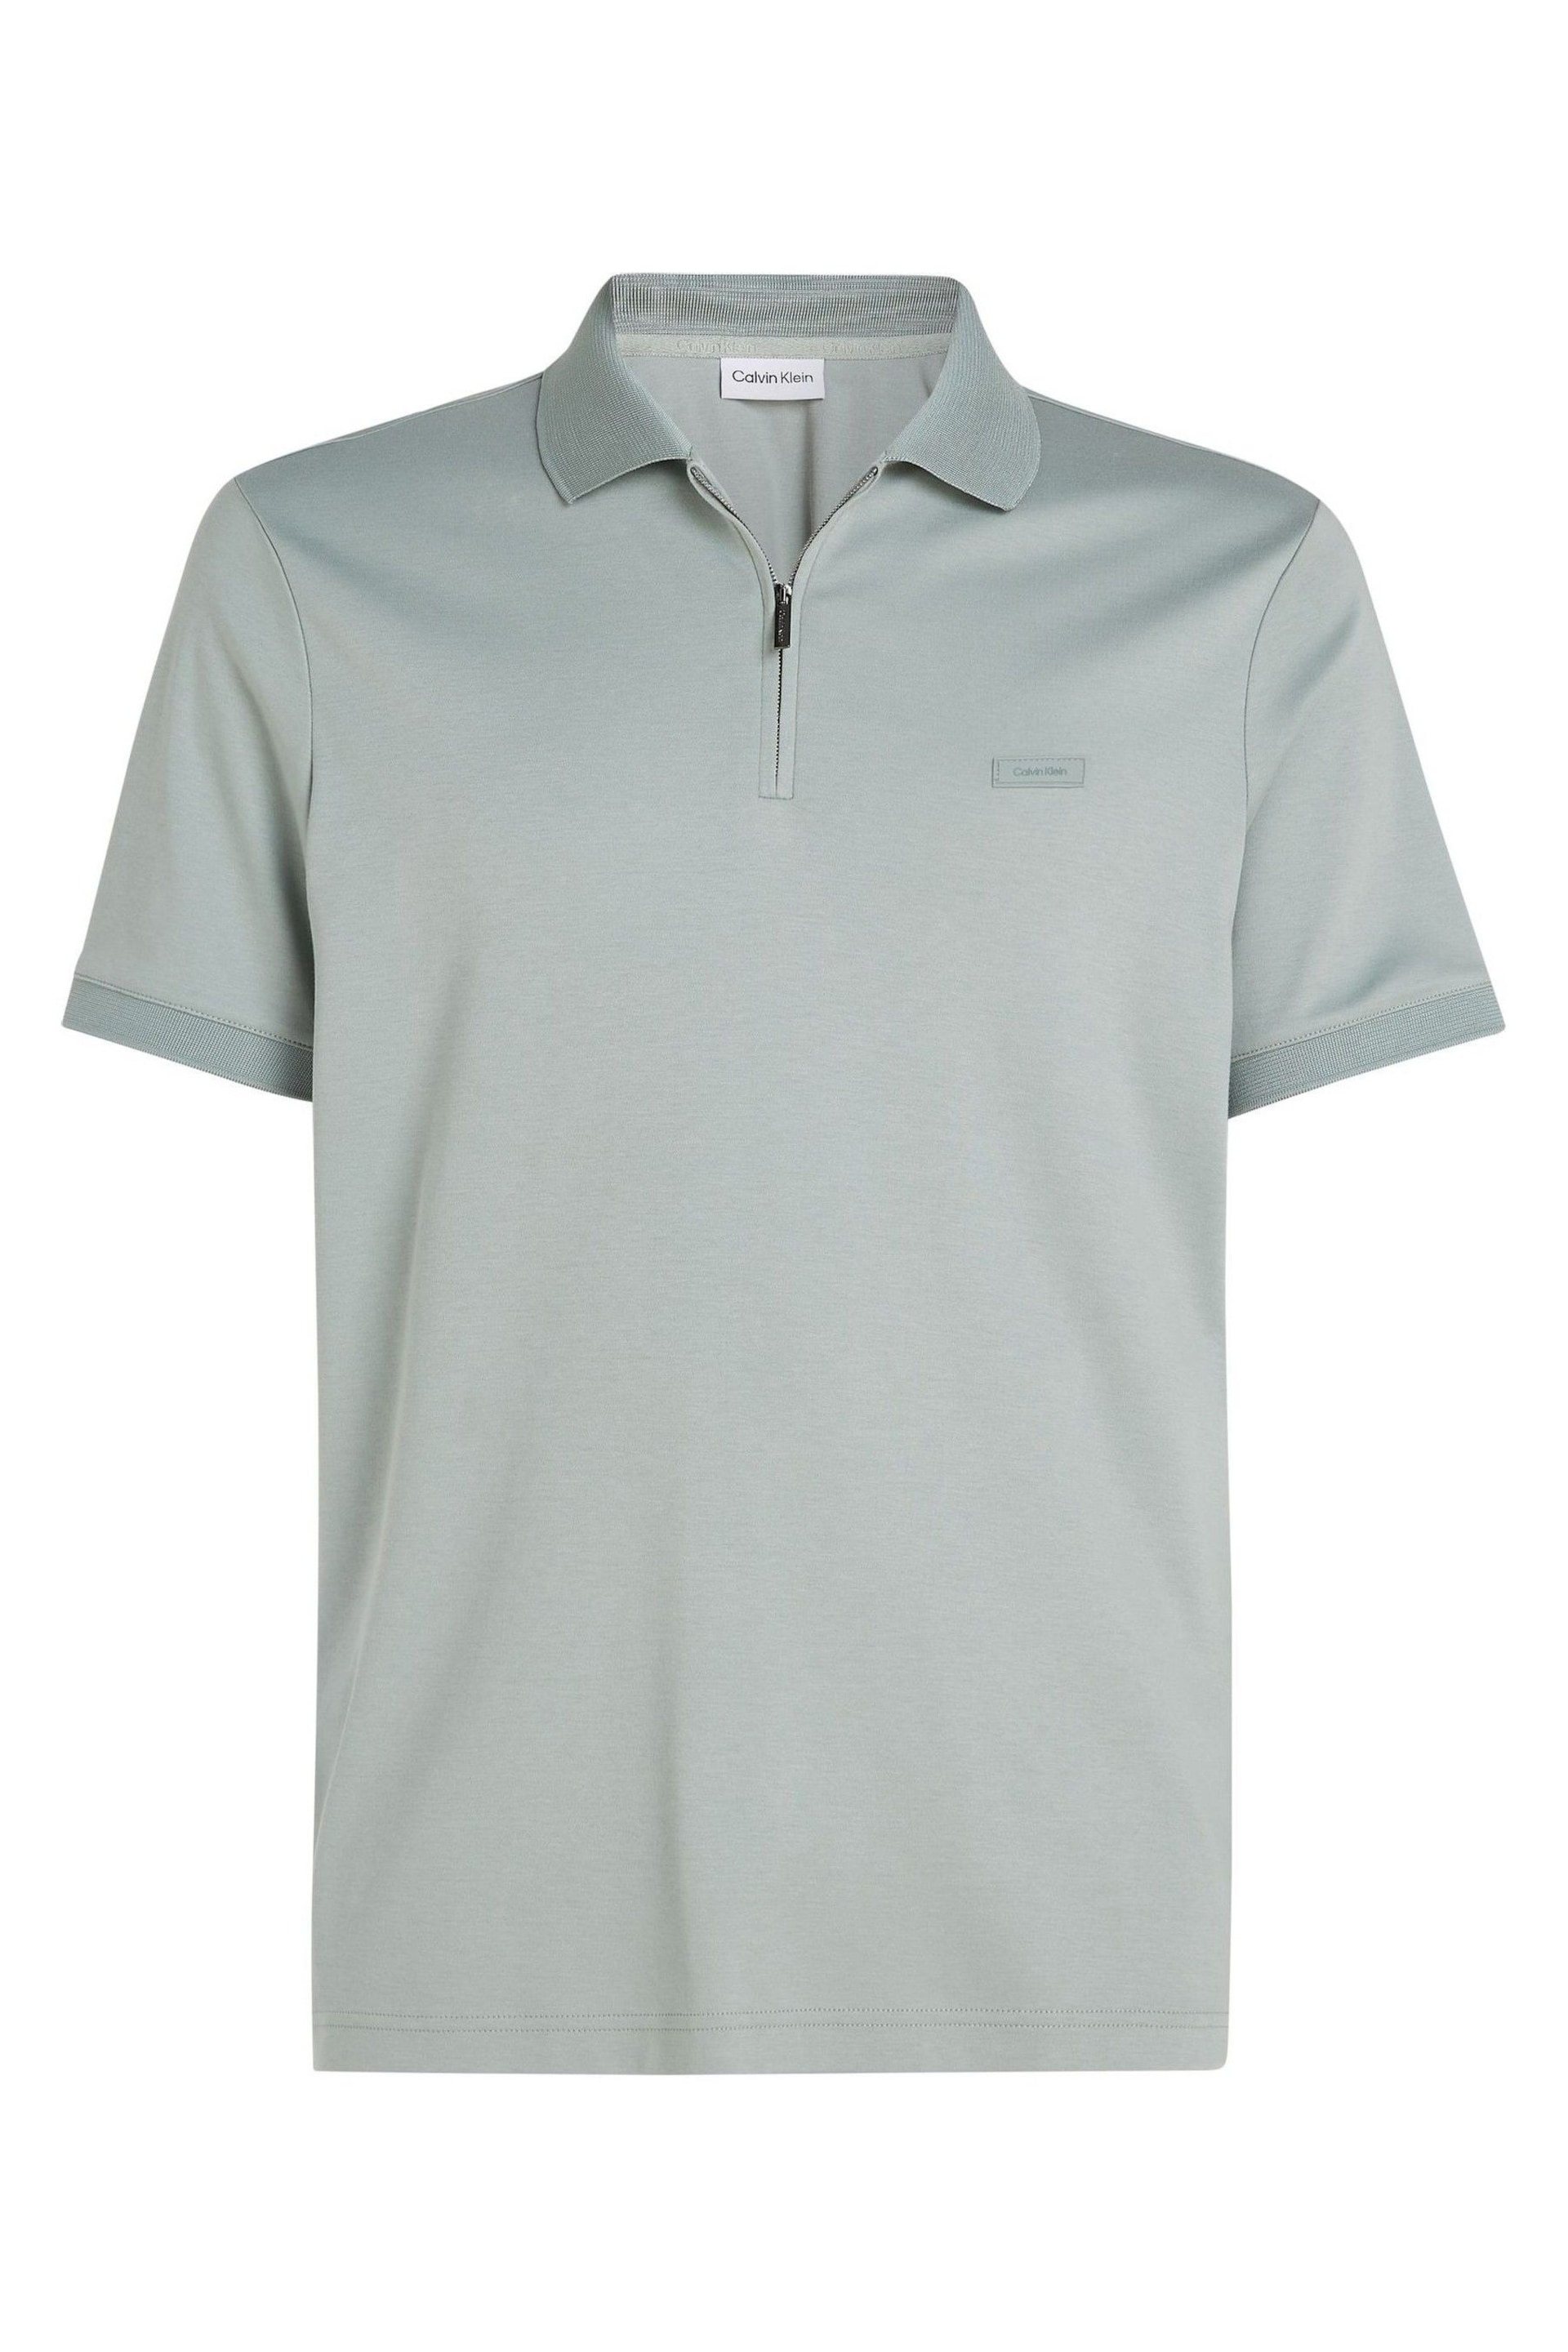 Calvin Klein Grey Smooth Cotton Welt Zip Polo Shirt - Image 4 of 6